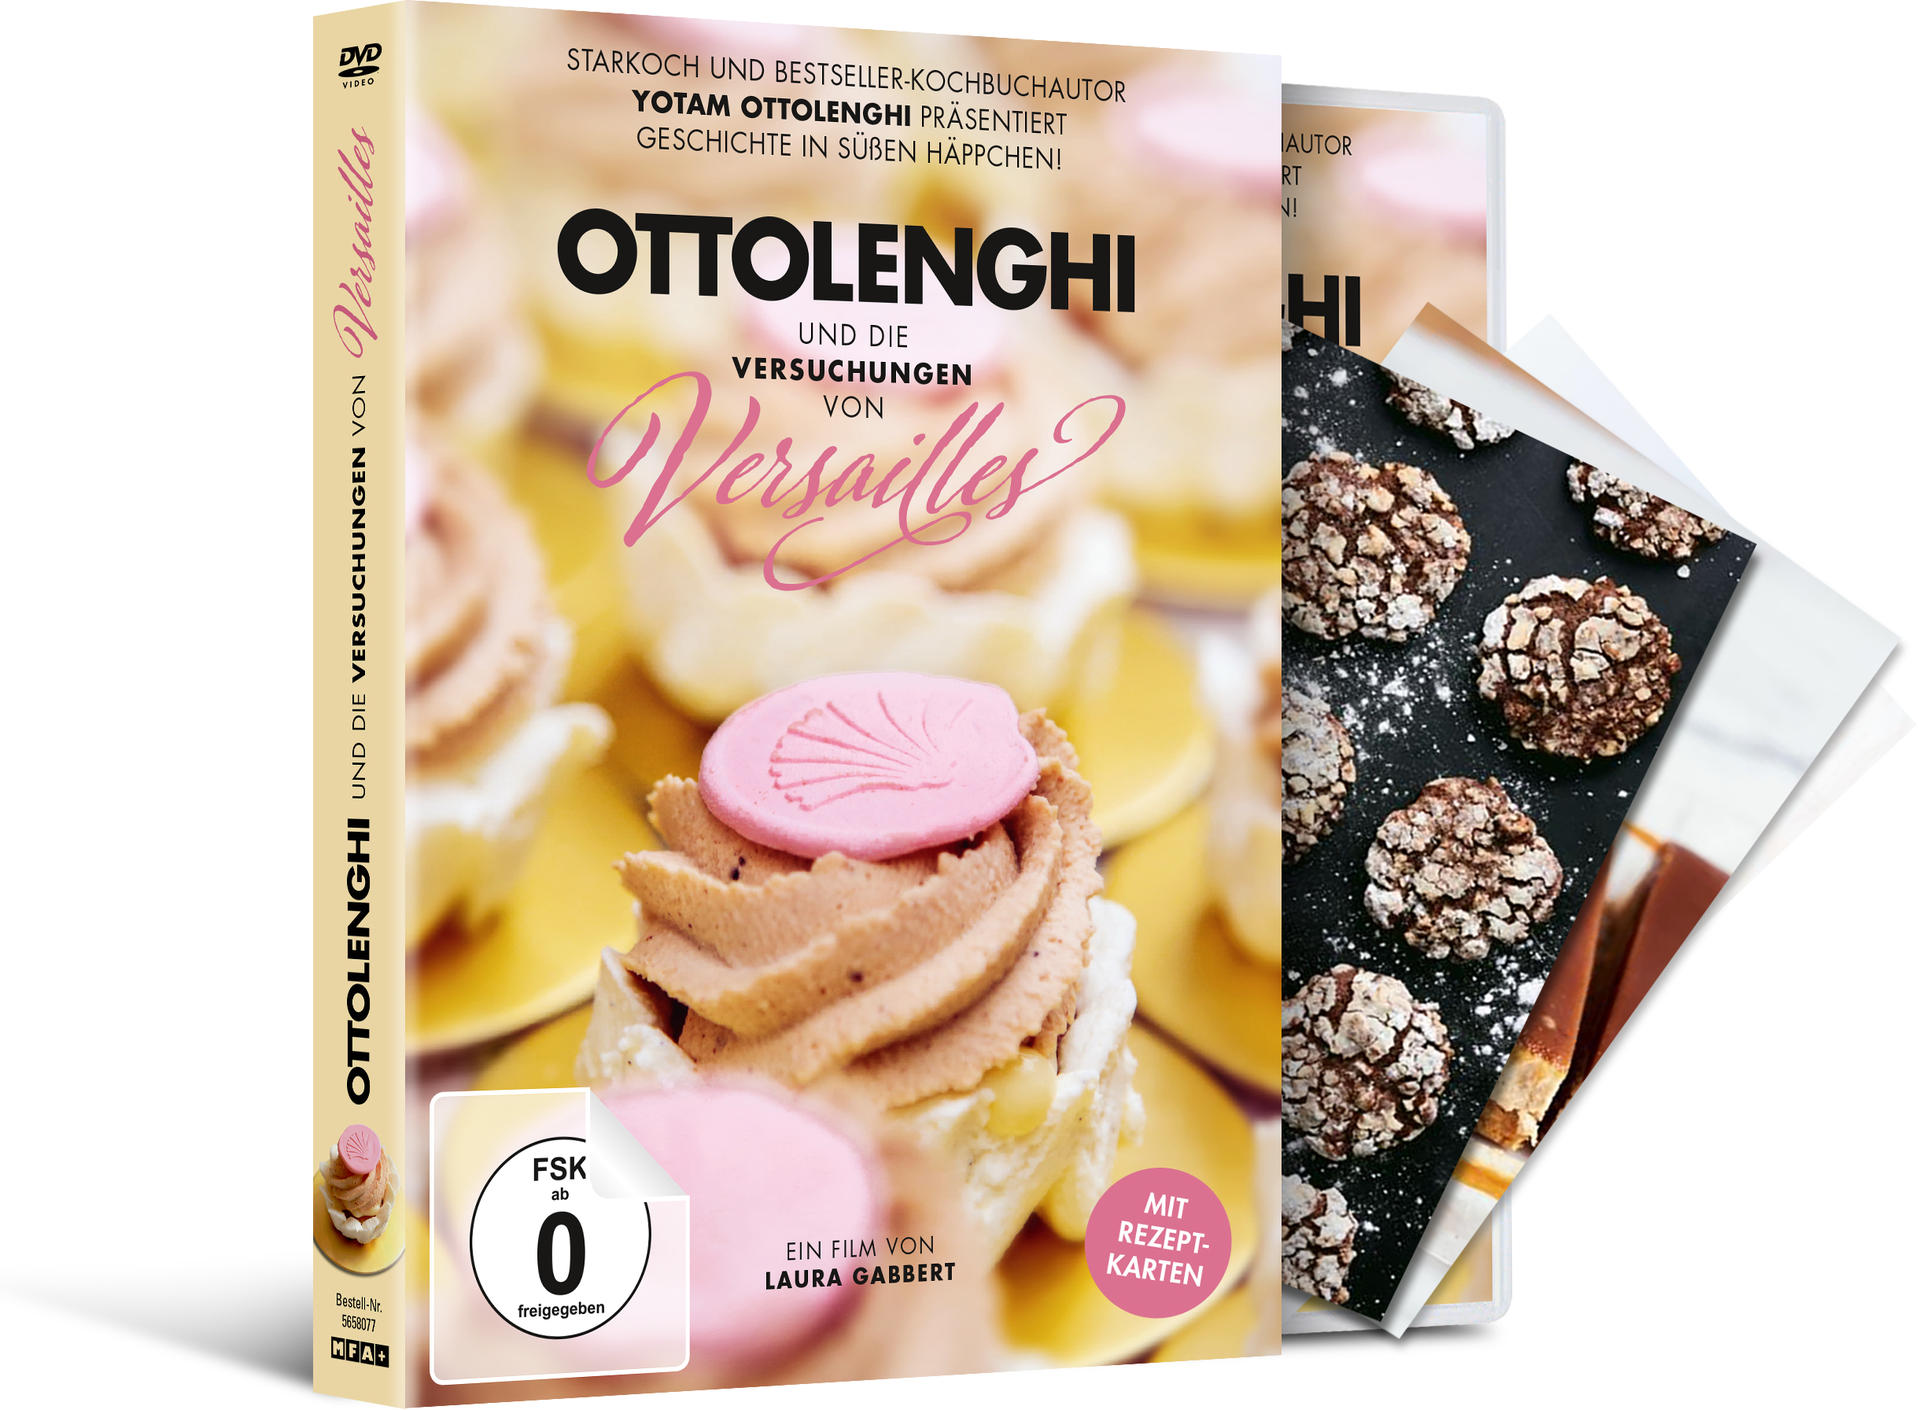 Ottolenghi und von DVD Versailles Versuchungen die